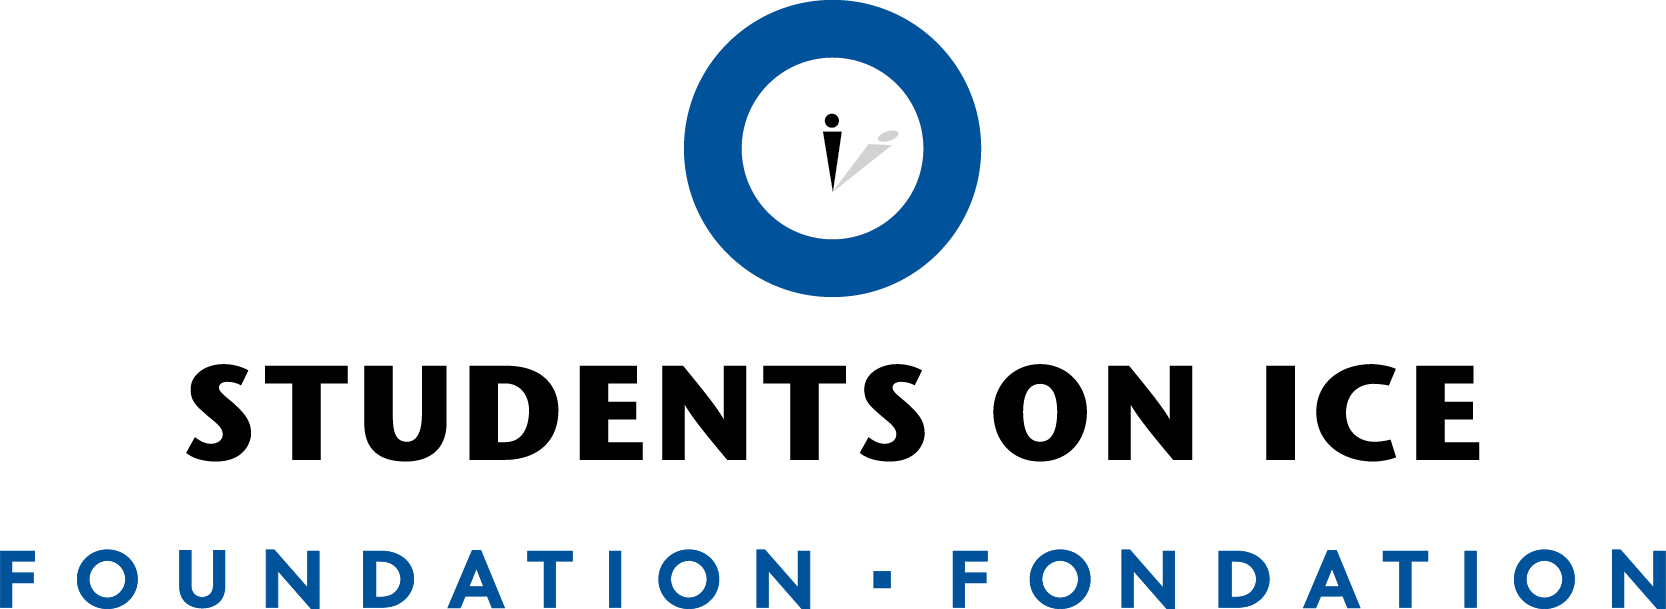 SOI_Foundation-Logo-Bilingual-ENG_First-HR